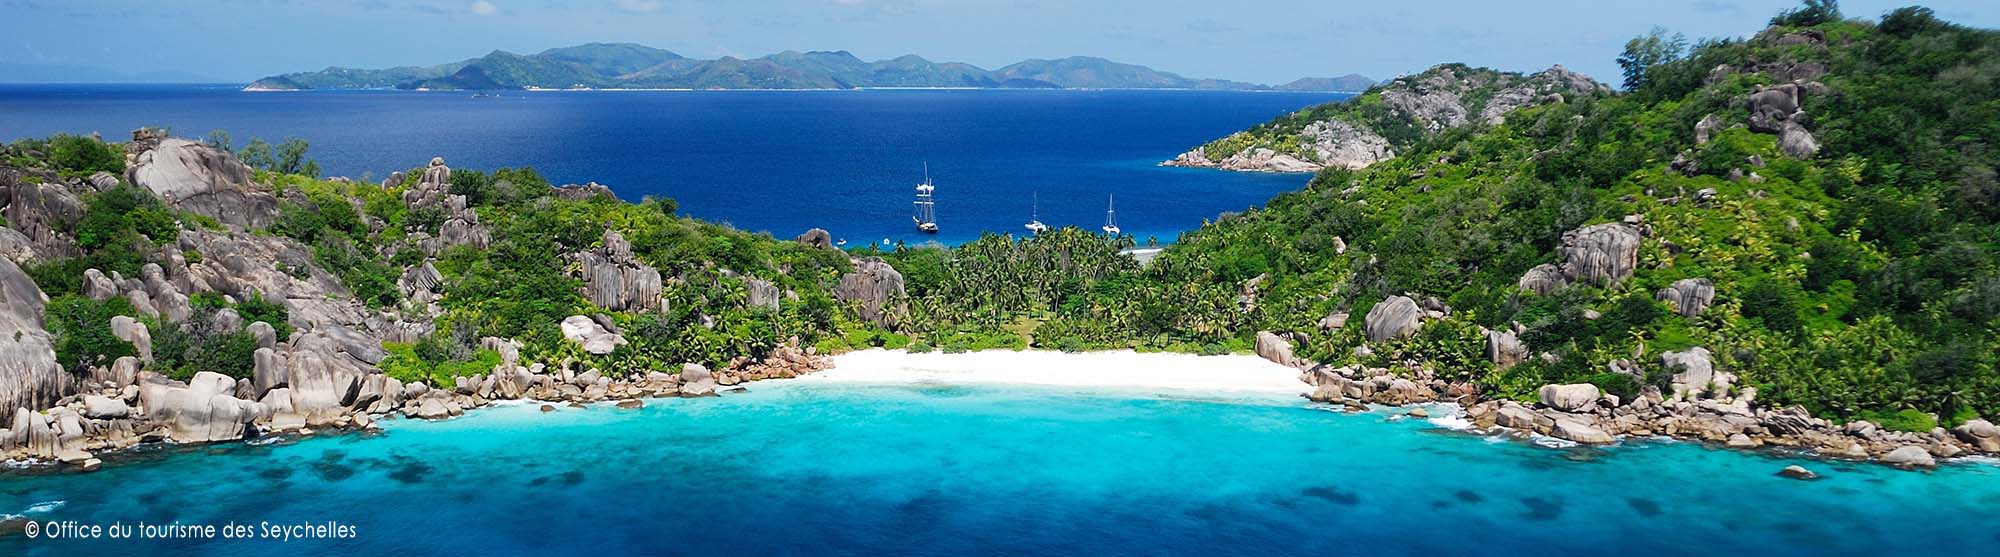 Seychelles-oceans-indien-oceans-voyages